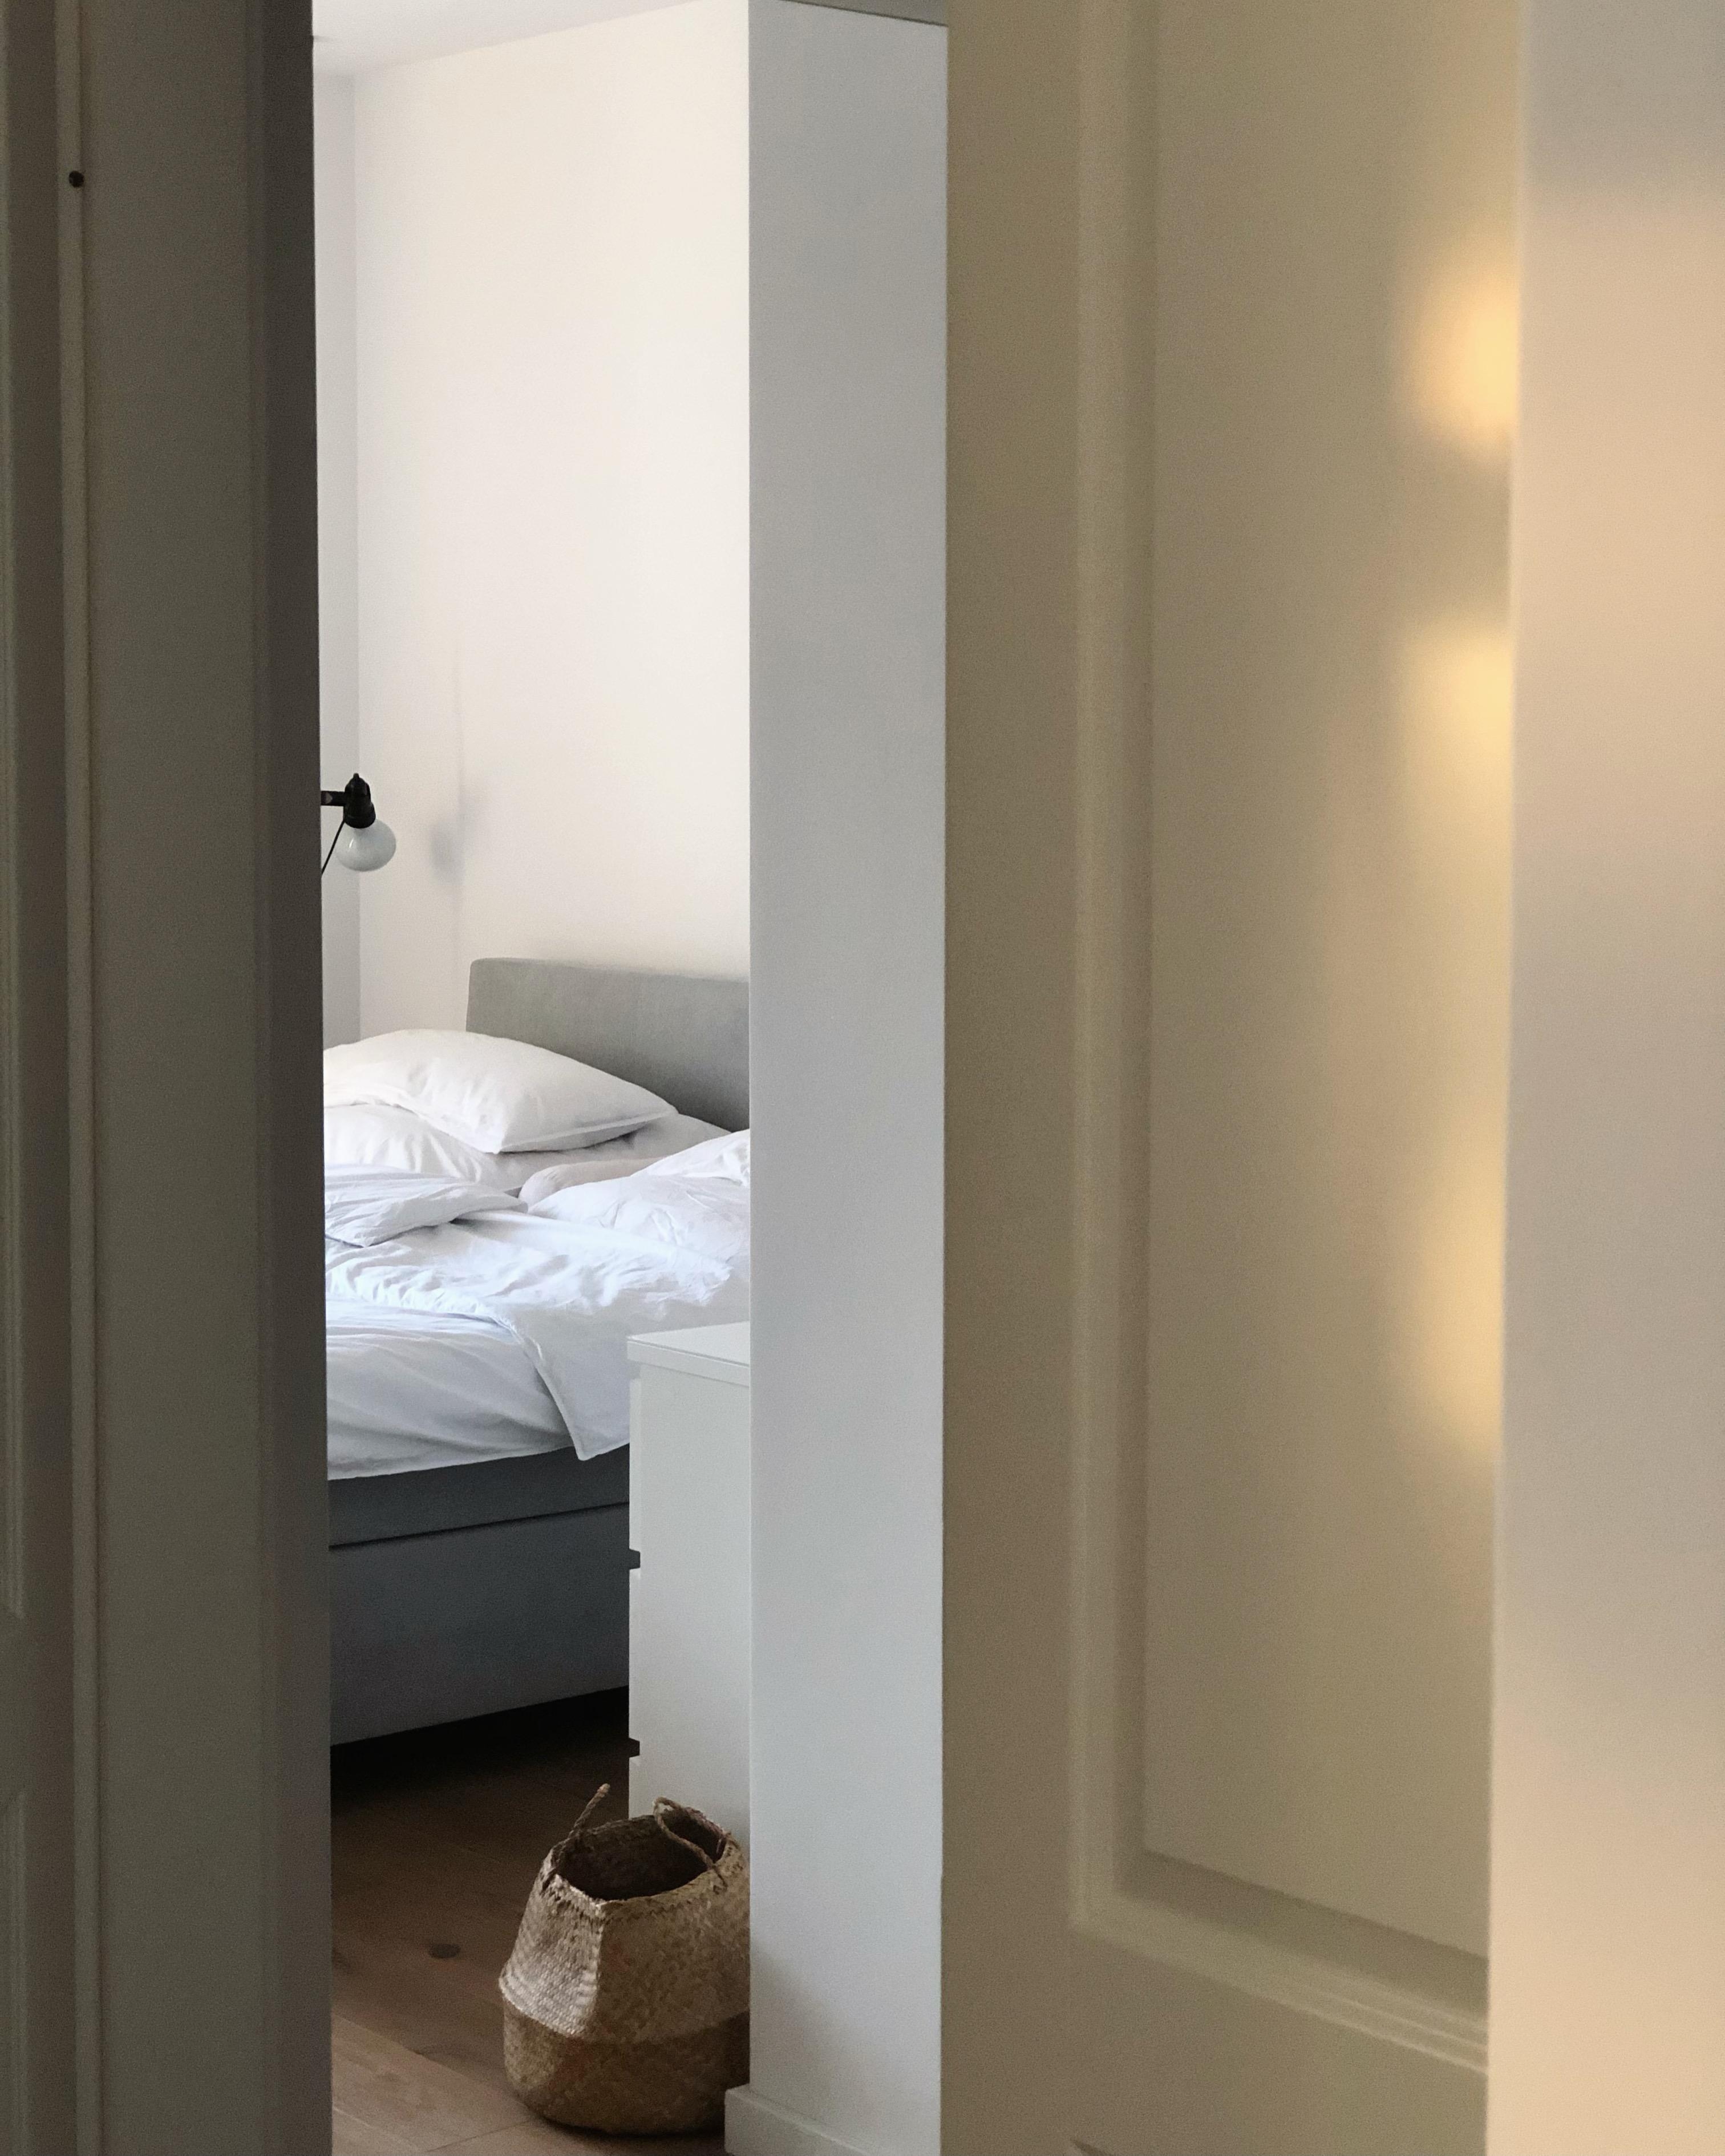 #schlafzimmer #bett #bed #bedroom #bedroominspo #interior #couchstyle #minimalistisch #minimalism #weiß #home #skandi